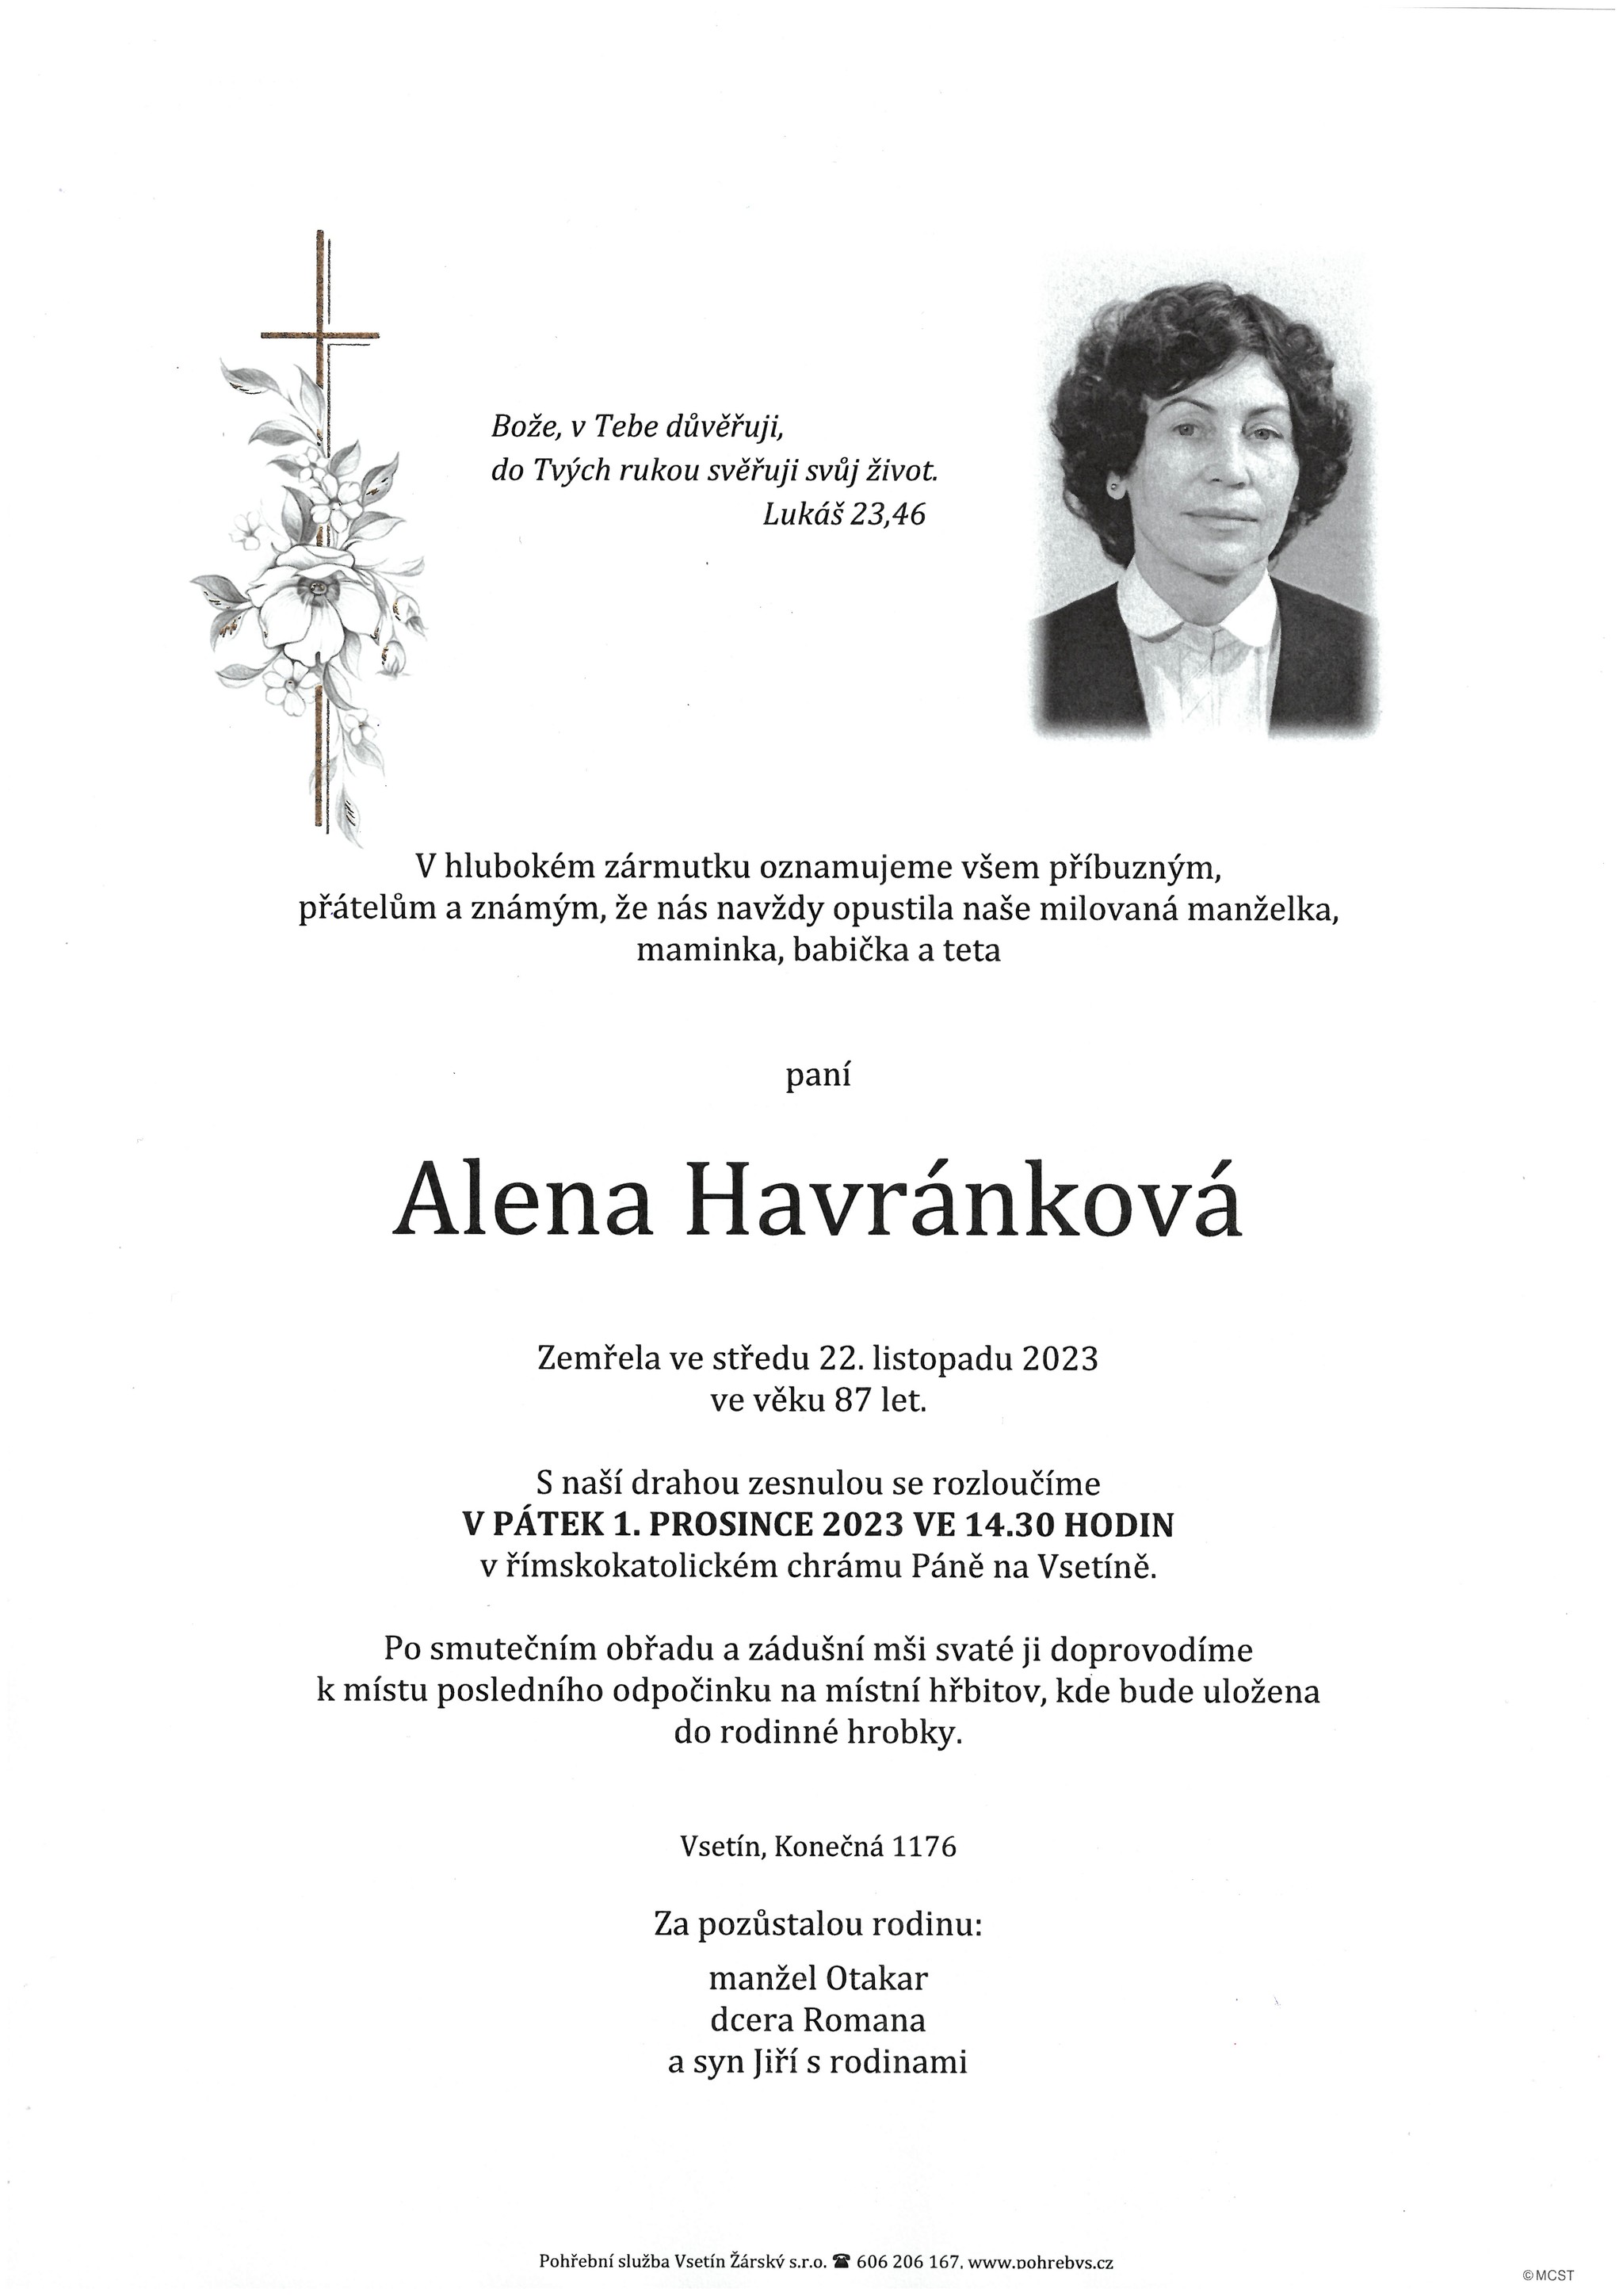 Alena Havránková